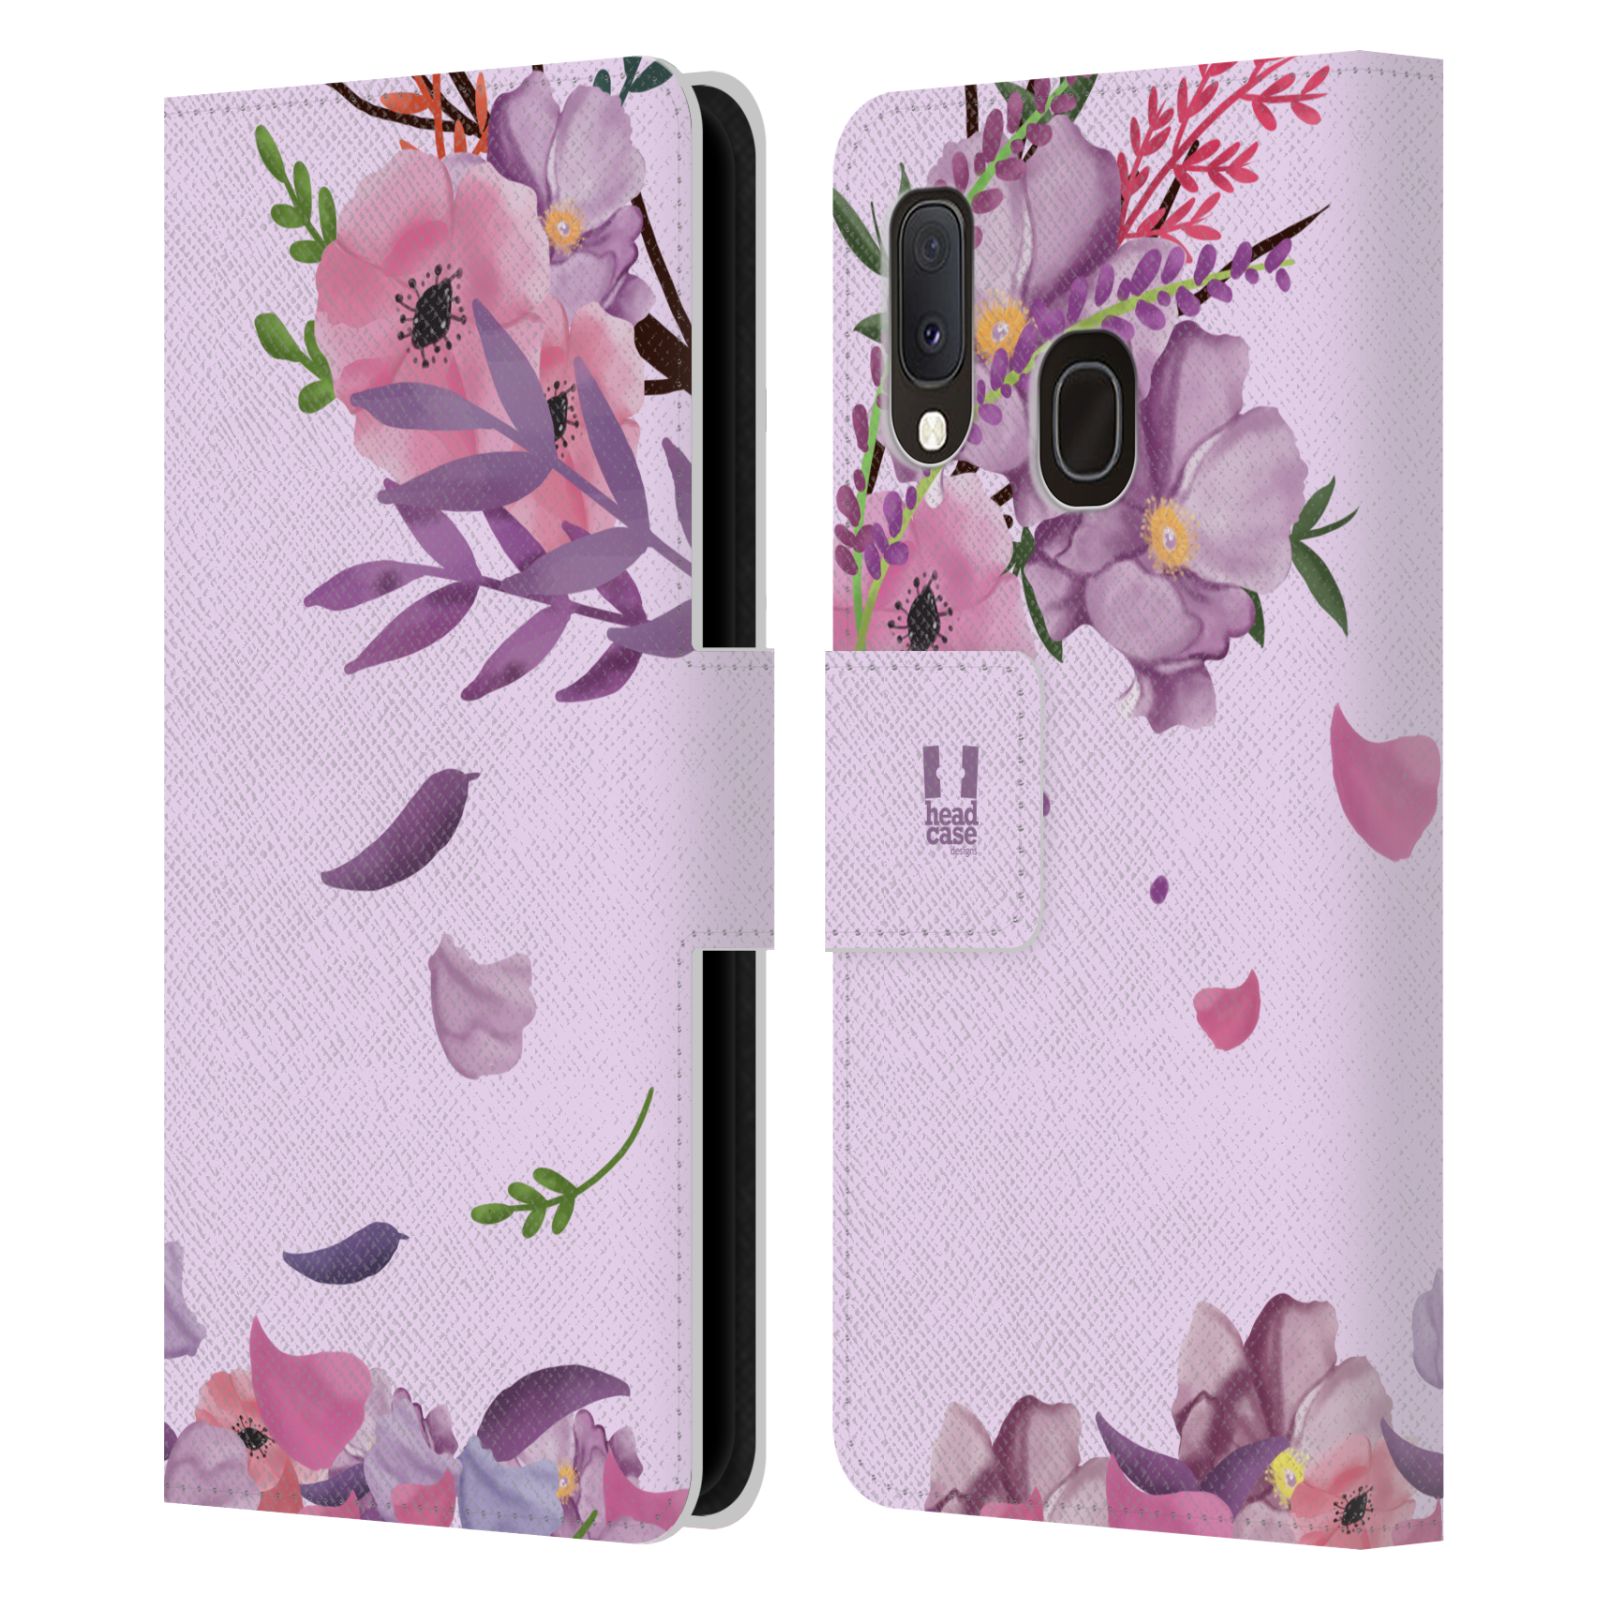 Pouzdro na mobil Samsung Galaxy A20E - HEAD CASE - Rozkvetlé růže a listy růžová